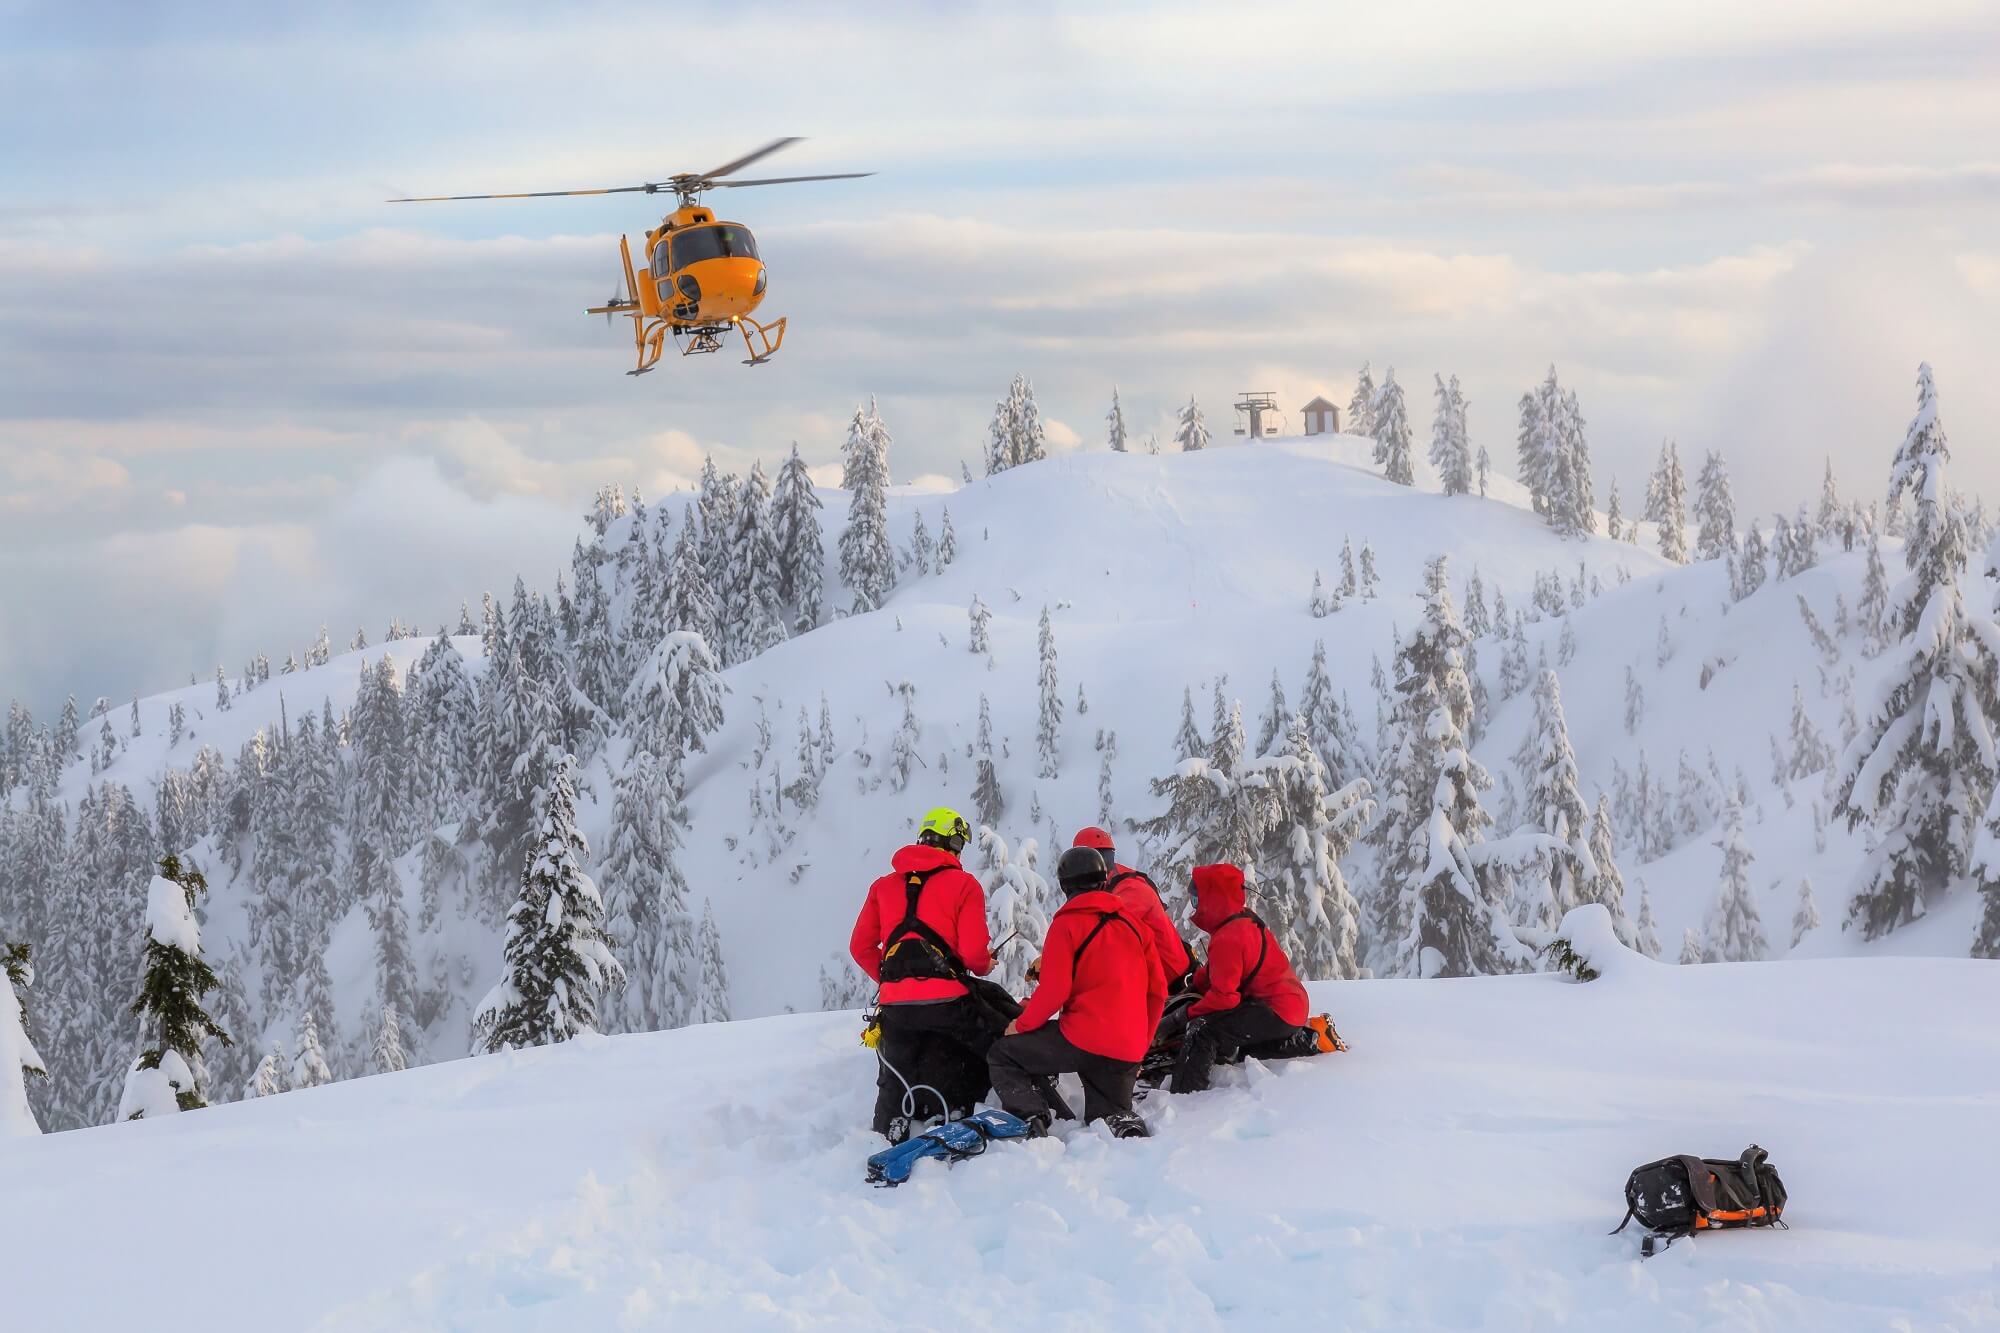 Mountain rescue aircraft